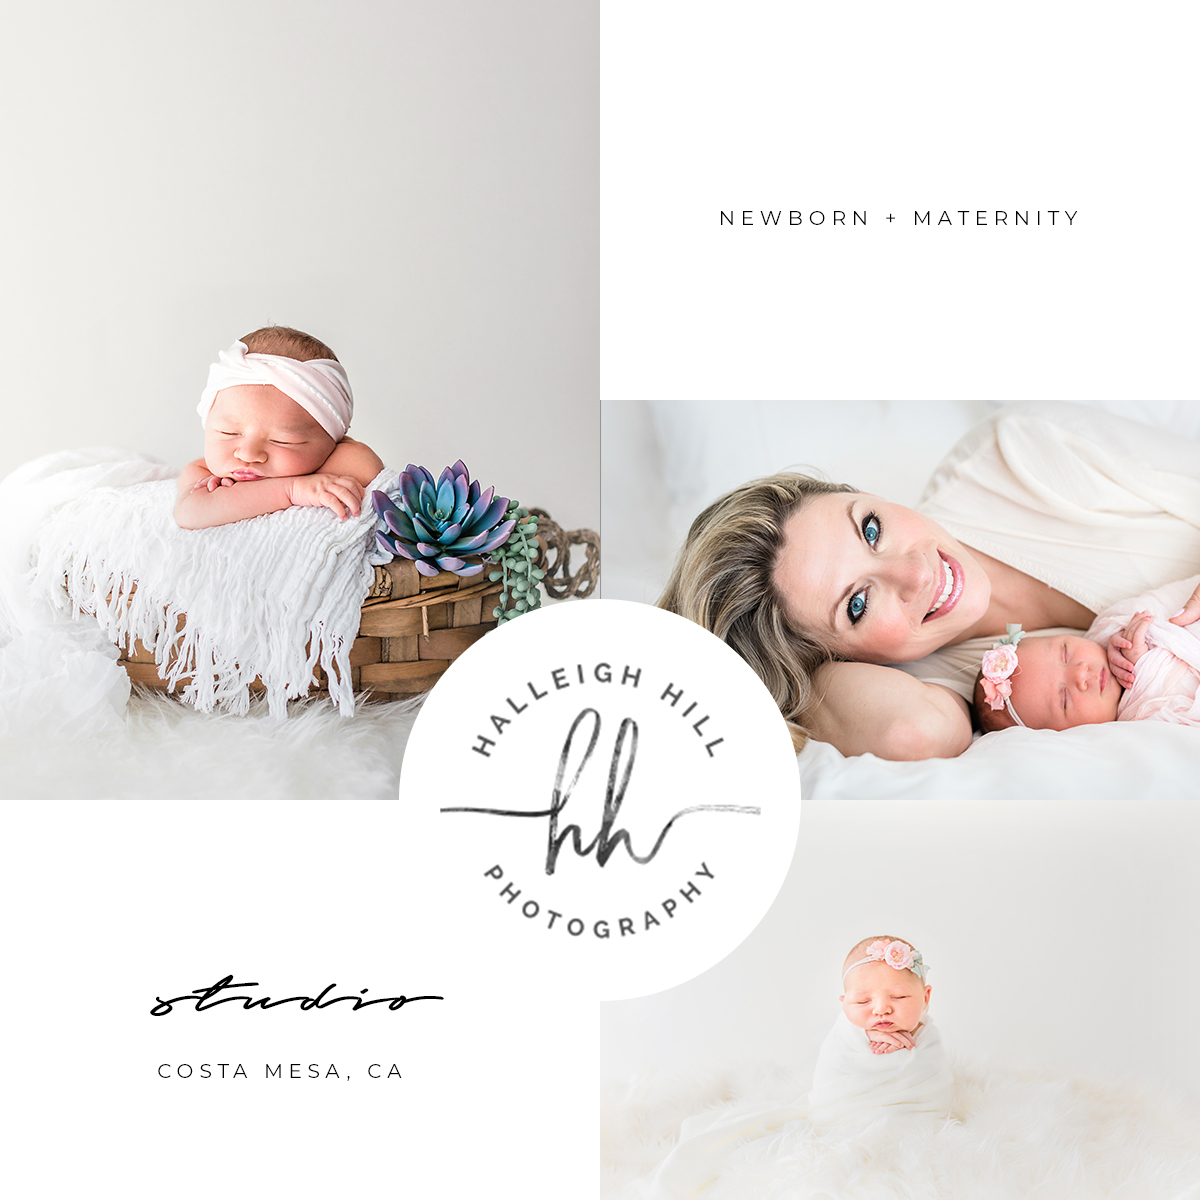 Halleigh Hill Photography, Costa Mesa California Newborn Photographer, Newborn, Newborn Posing Ideas, Orange County Newborn Photographer, Newborn Photographer near me, 